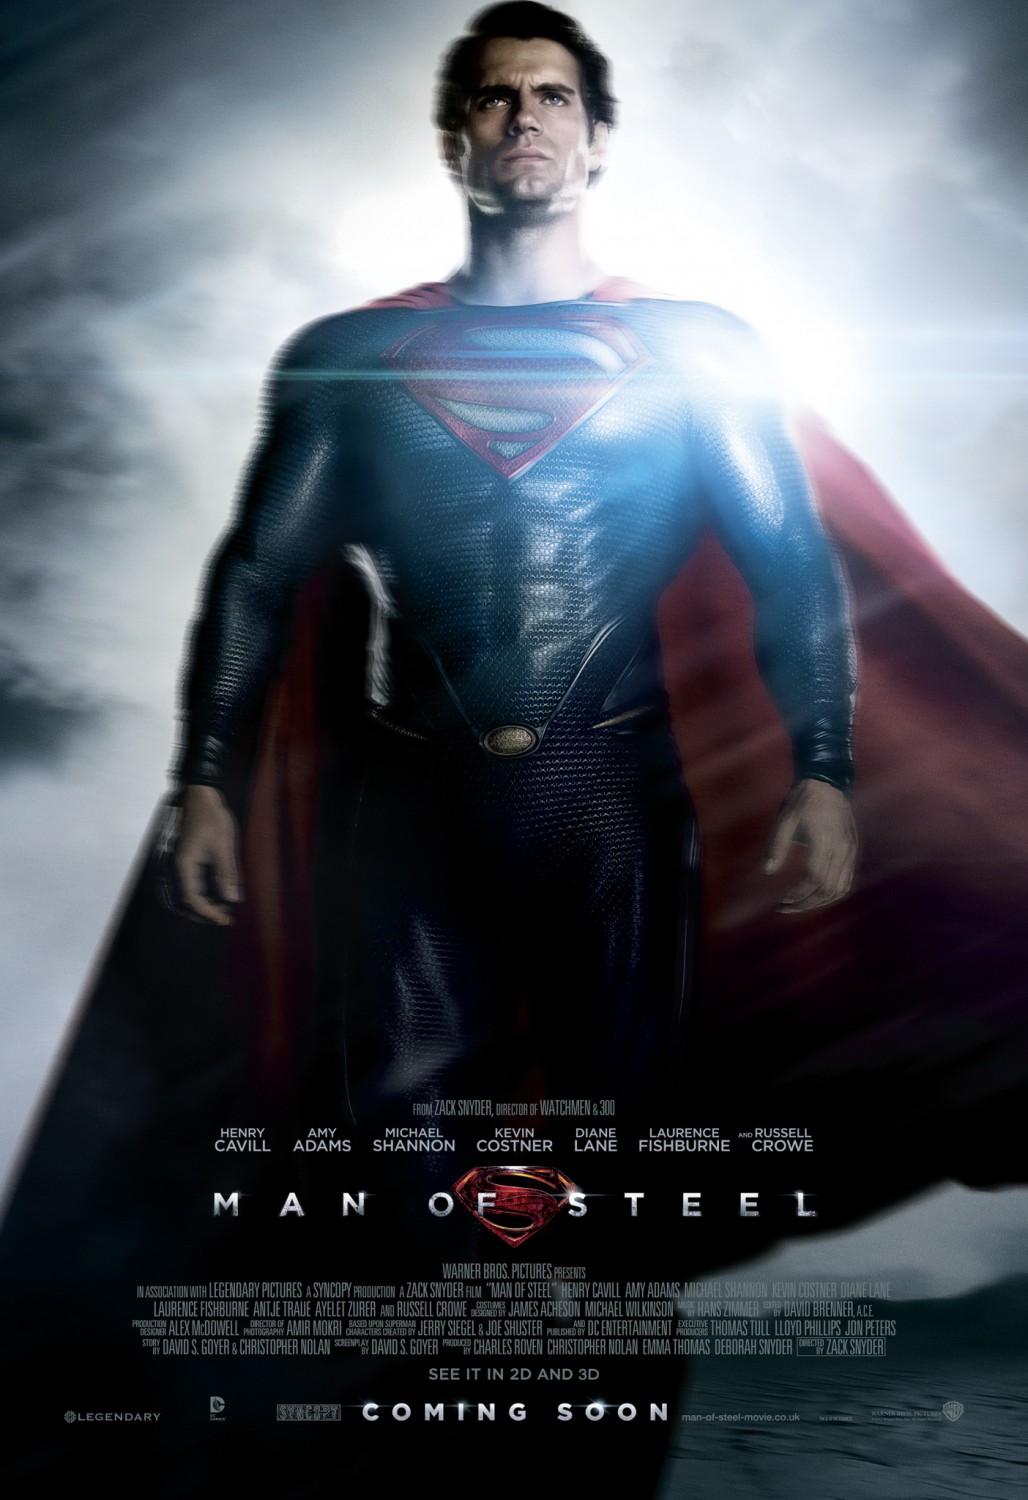 man of steel full movie online free download